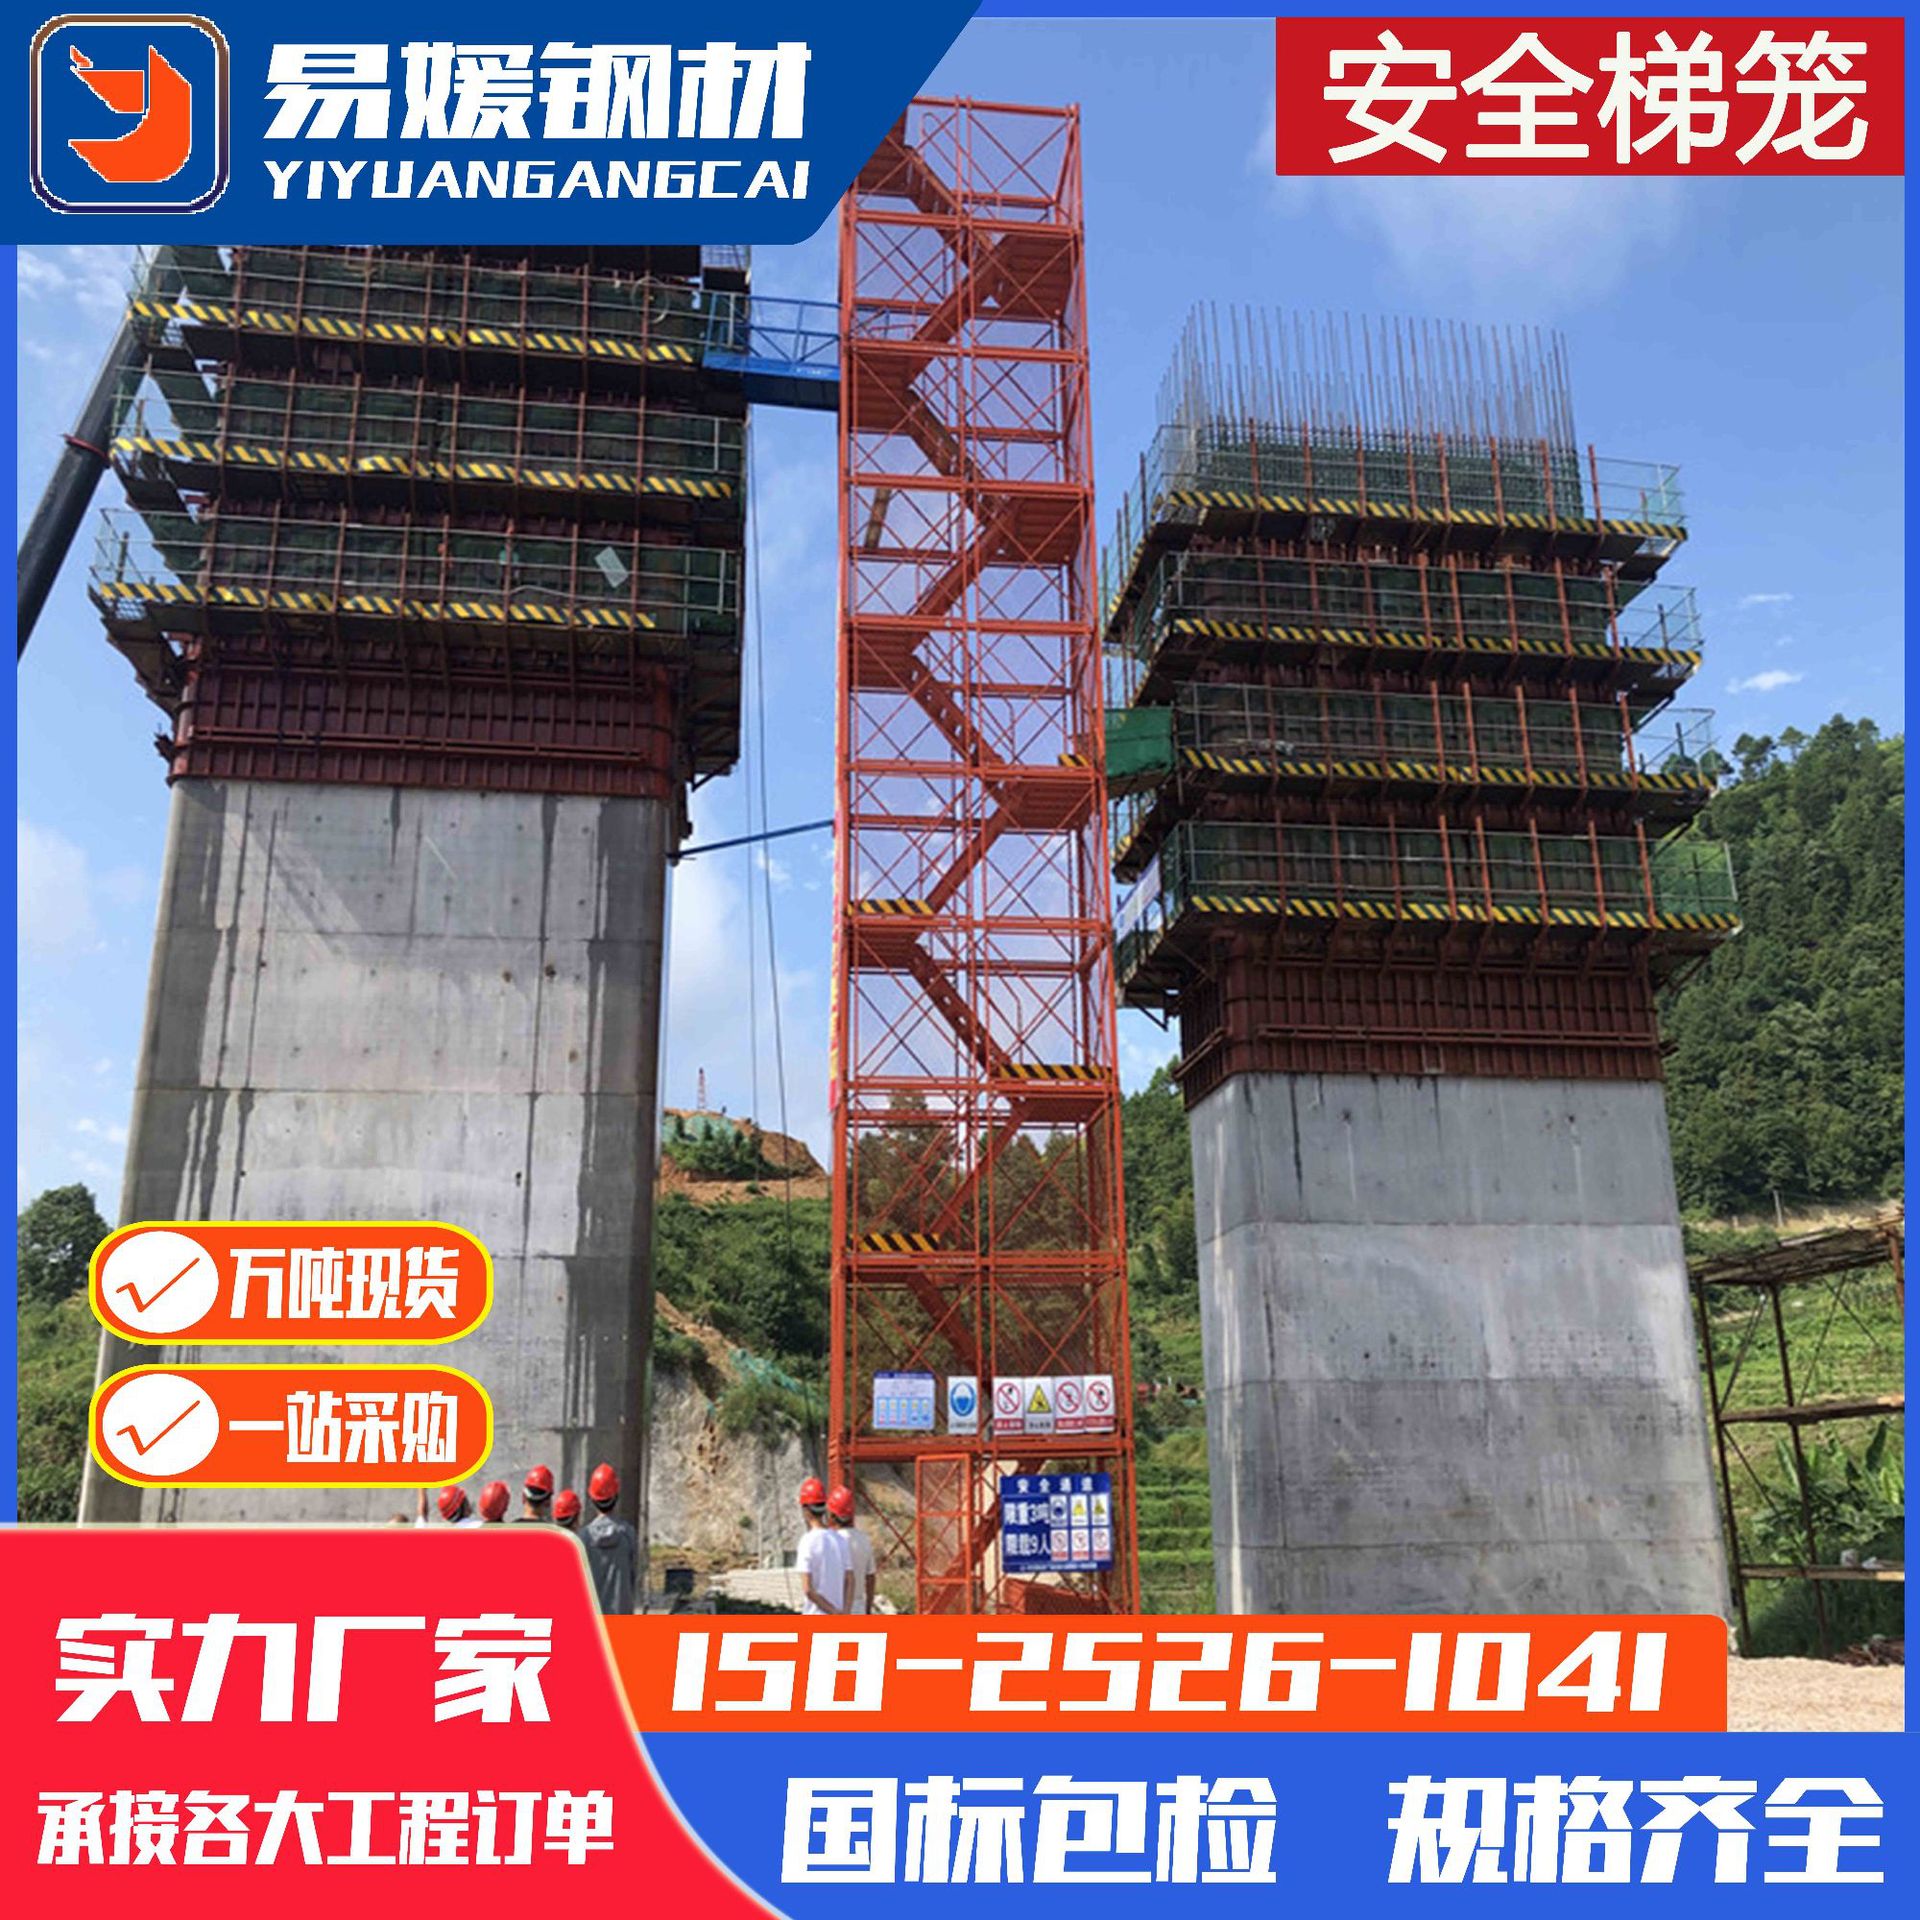 云南加工施工安全爬组合式梯笼箱式安全梯笼基坑通道梯笼安全梯笼